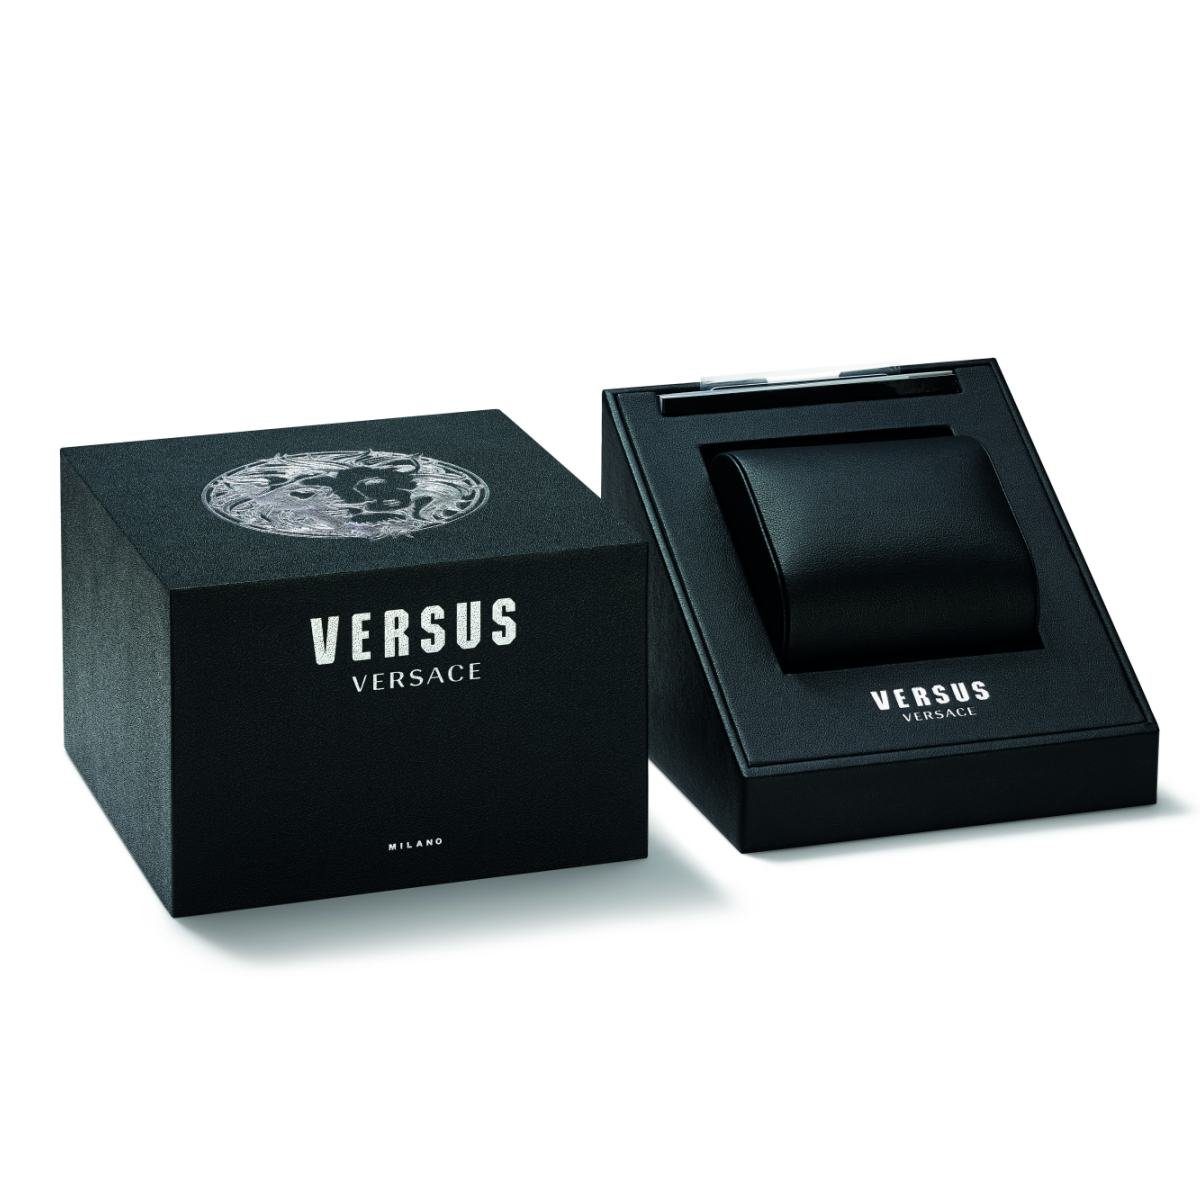 Versus Versace Quarzuhr VSPHI5921